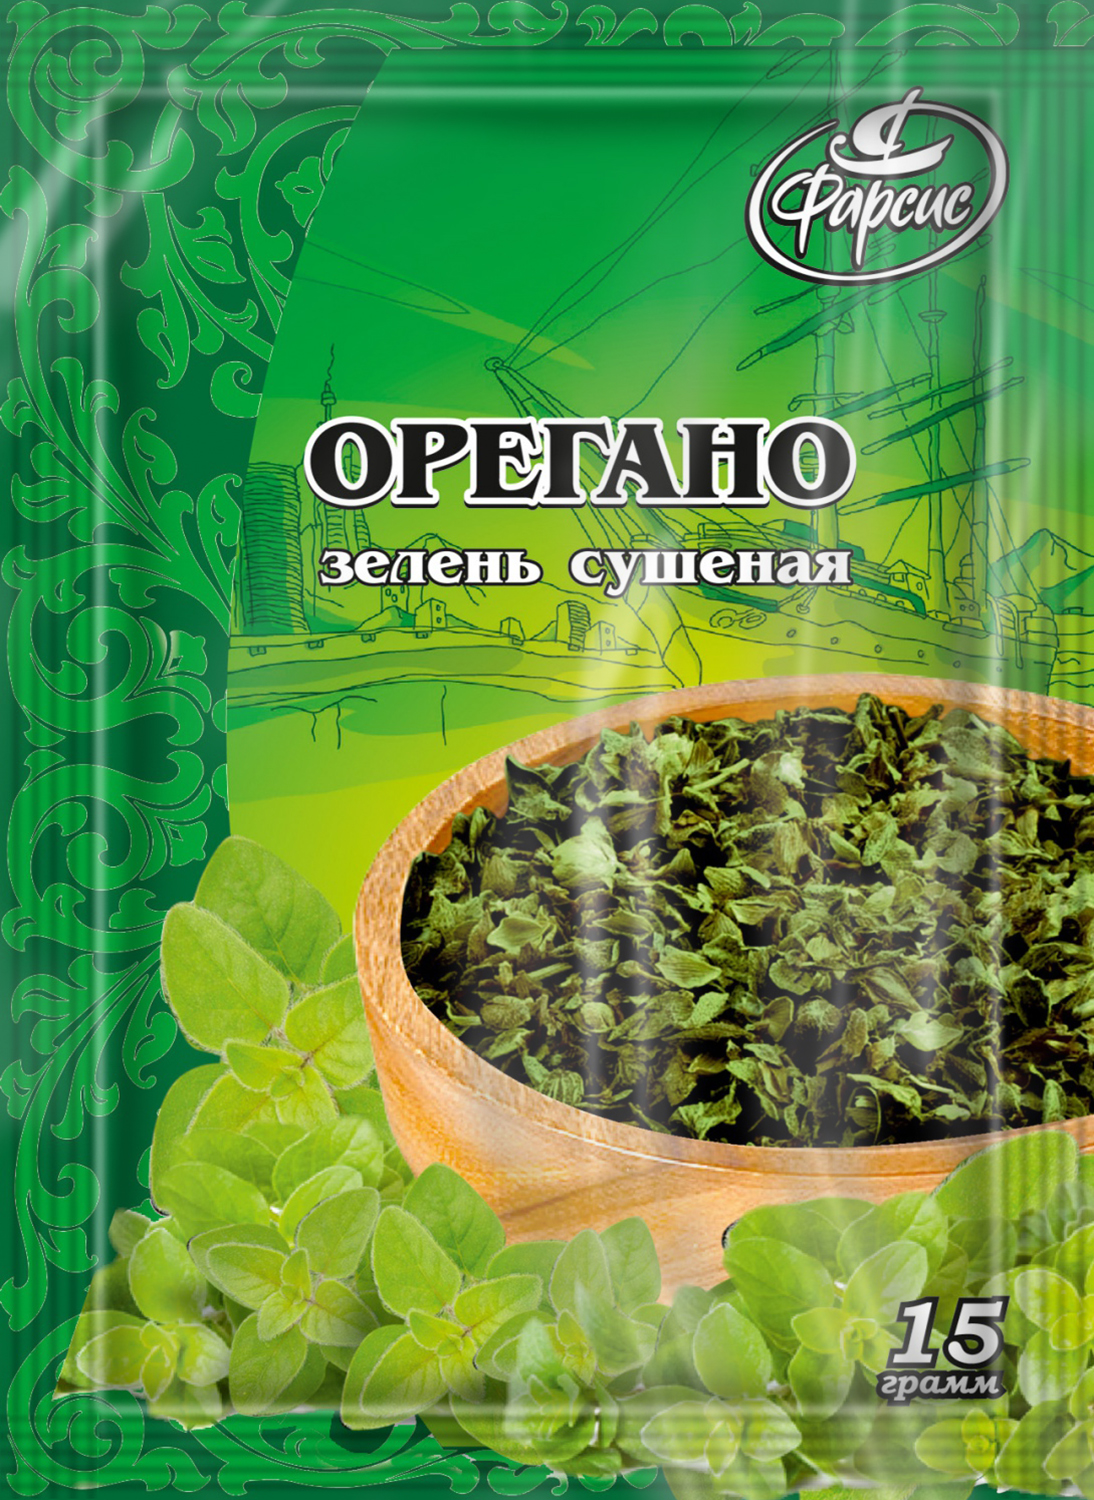 Орегано зелень сушеная 15 грамм - бакалея, специи, приправы оптом в Москве  от производителя ООО Фарсис